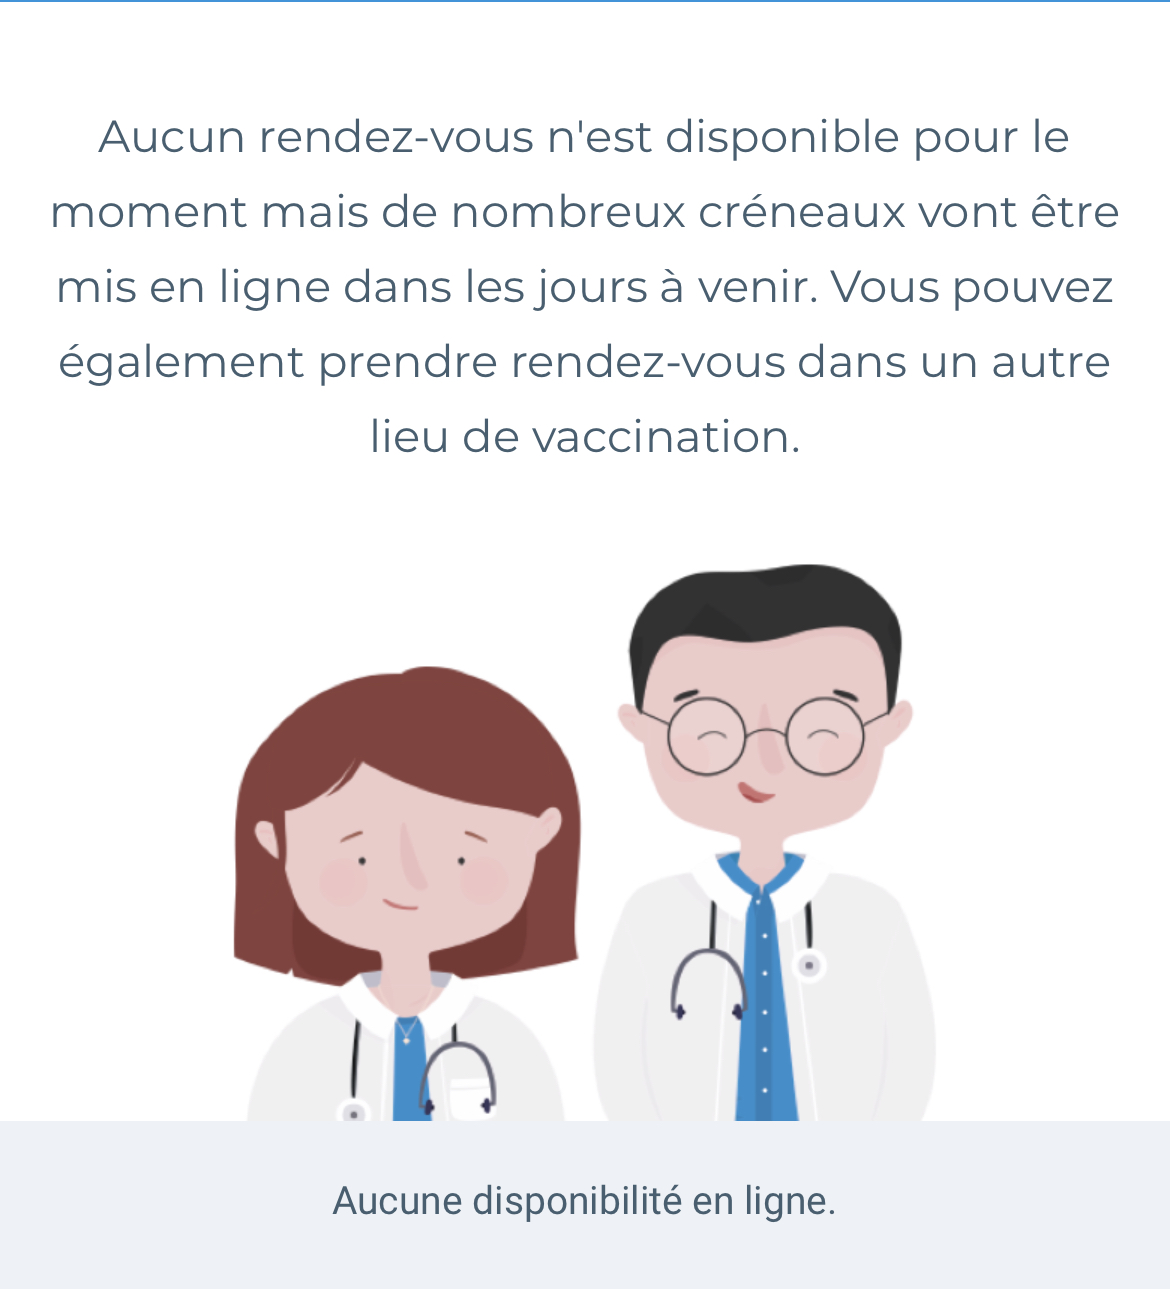 パリ最新情報「マッチングアプリで全年代の国民に。ワクチン接種スピードアップ」